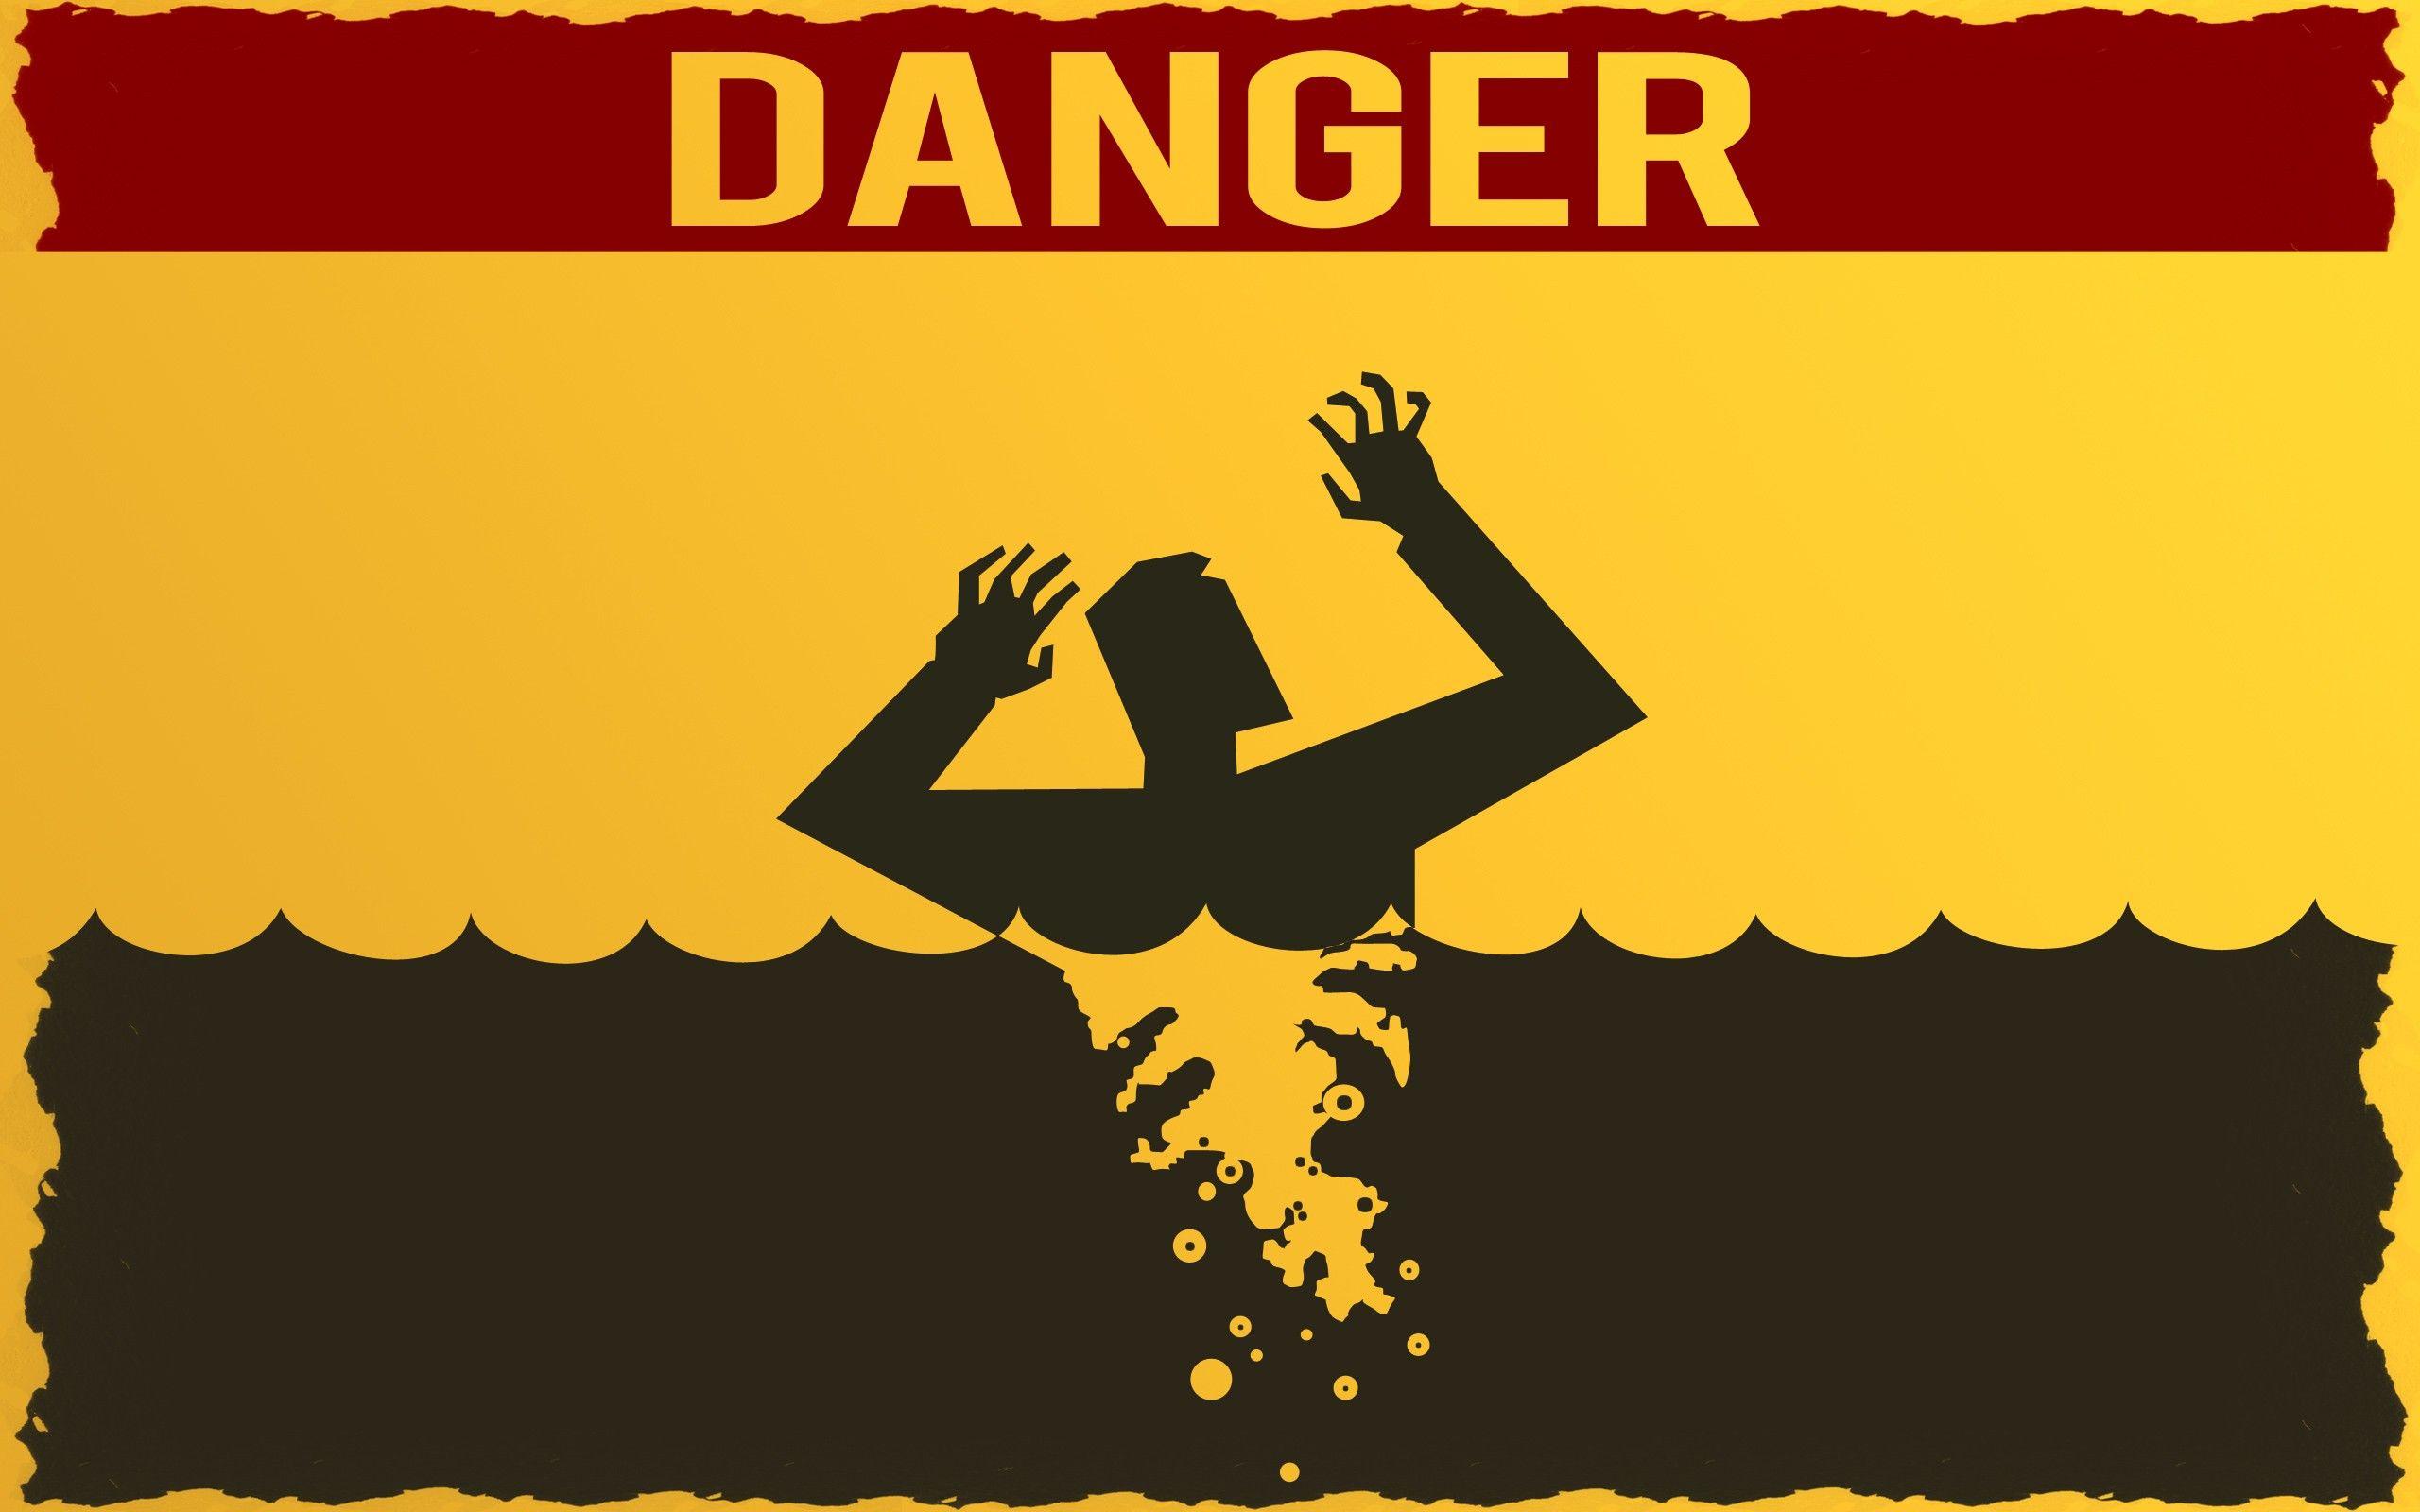 Download the Danger Acid Wallpaper, Danger Acid iPhone Wallpaper